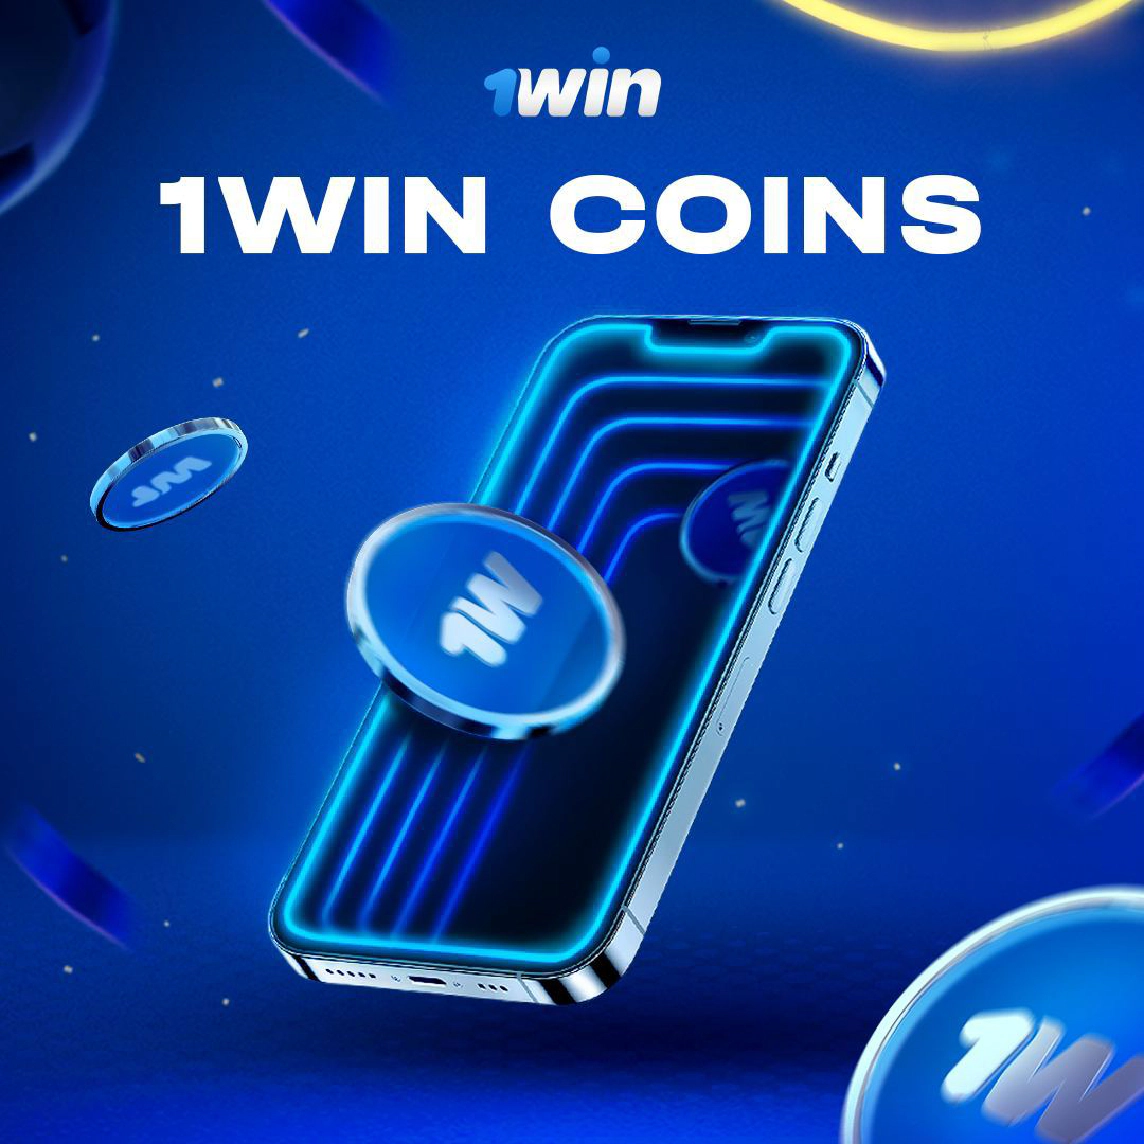 1win coins как получить